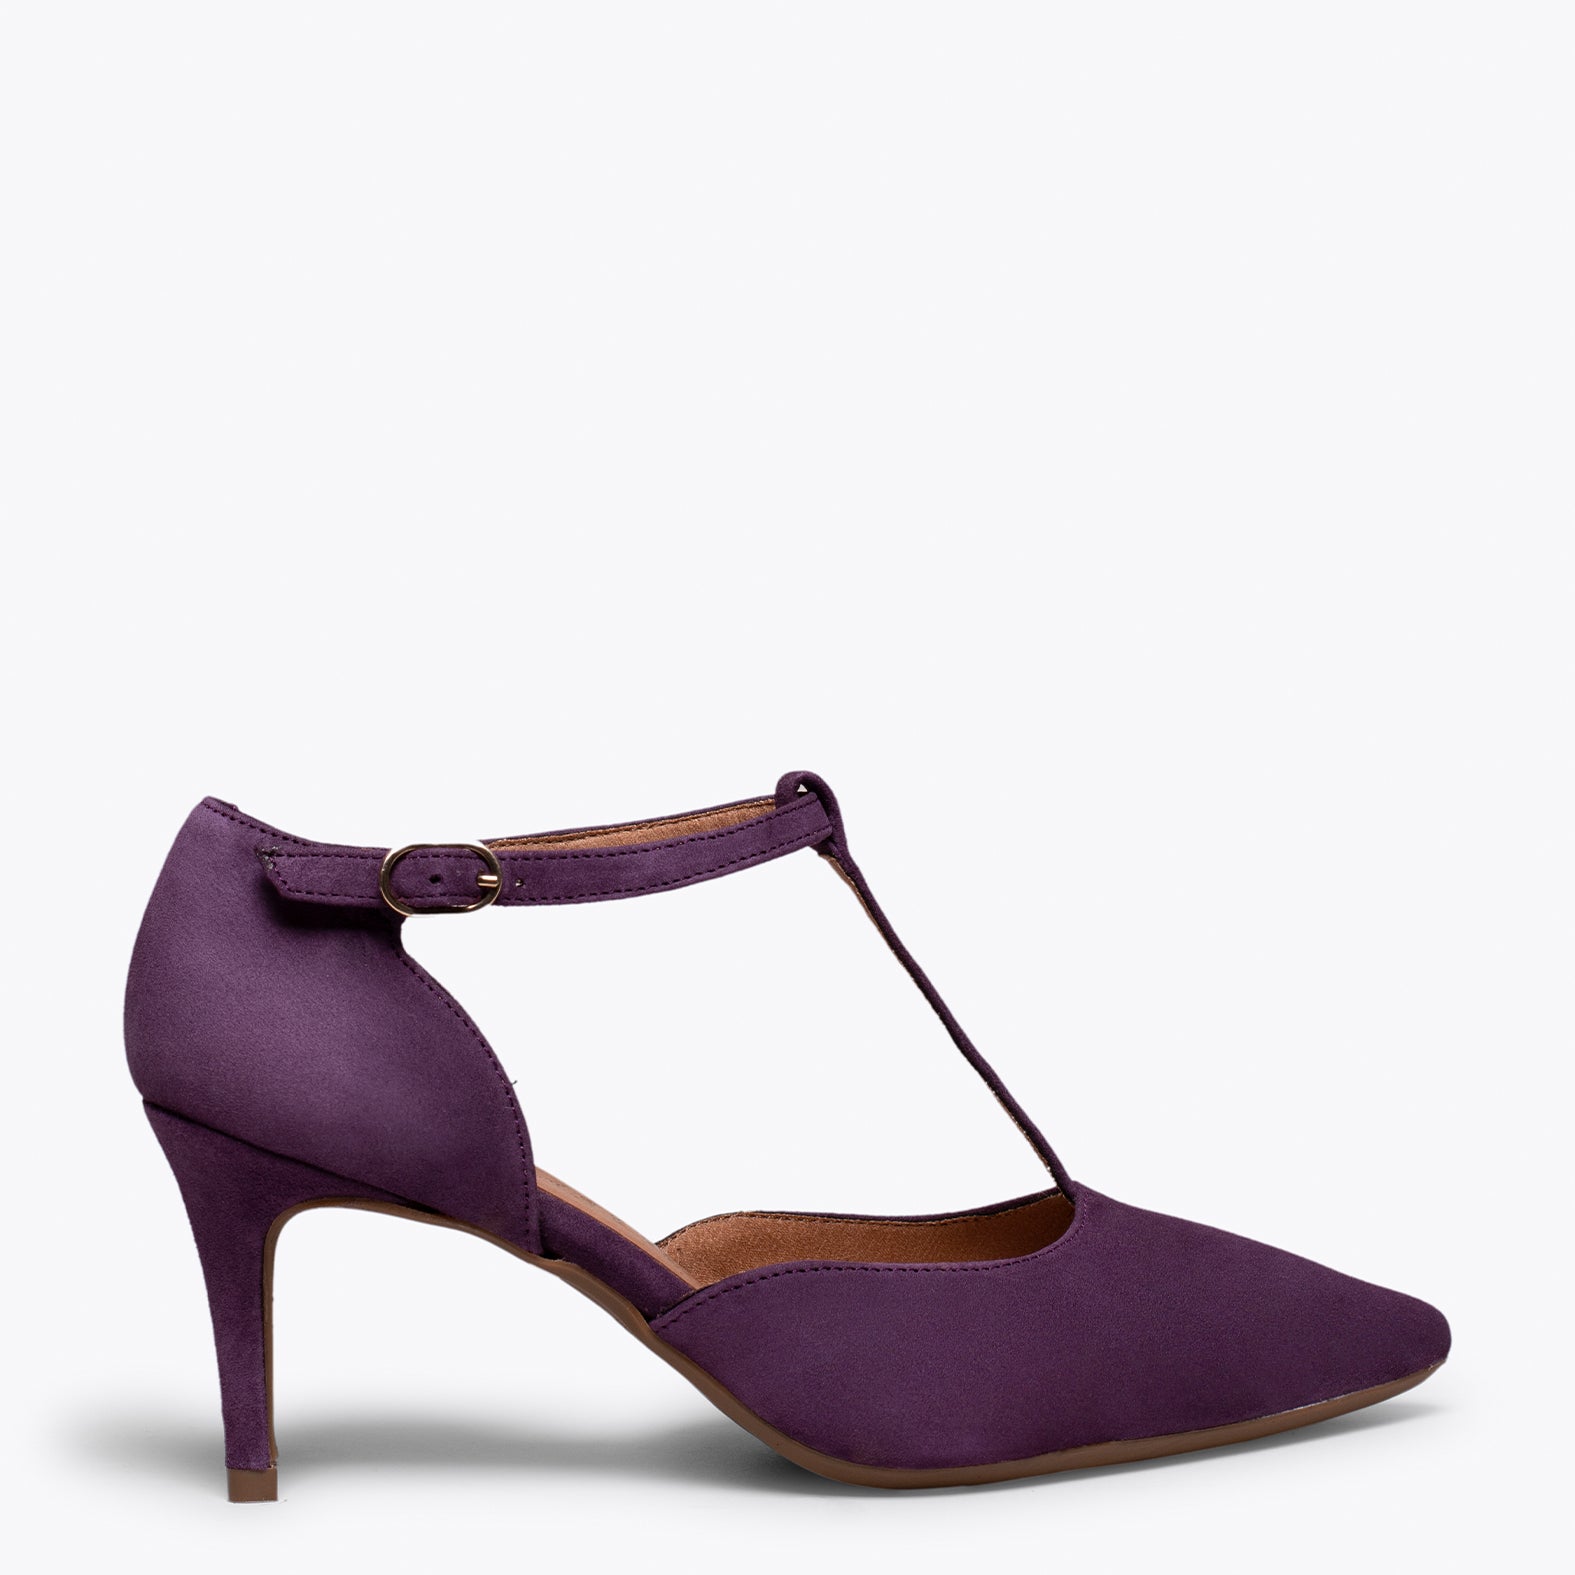 COCKTAIL – PURPLE elegant mid heel shoes